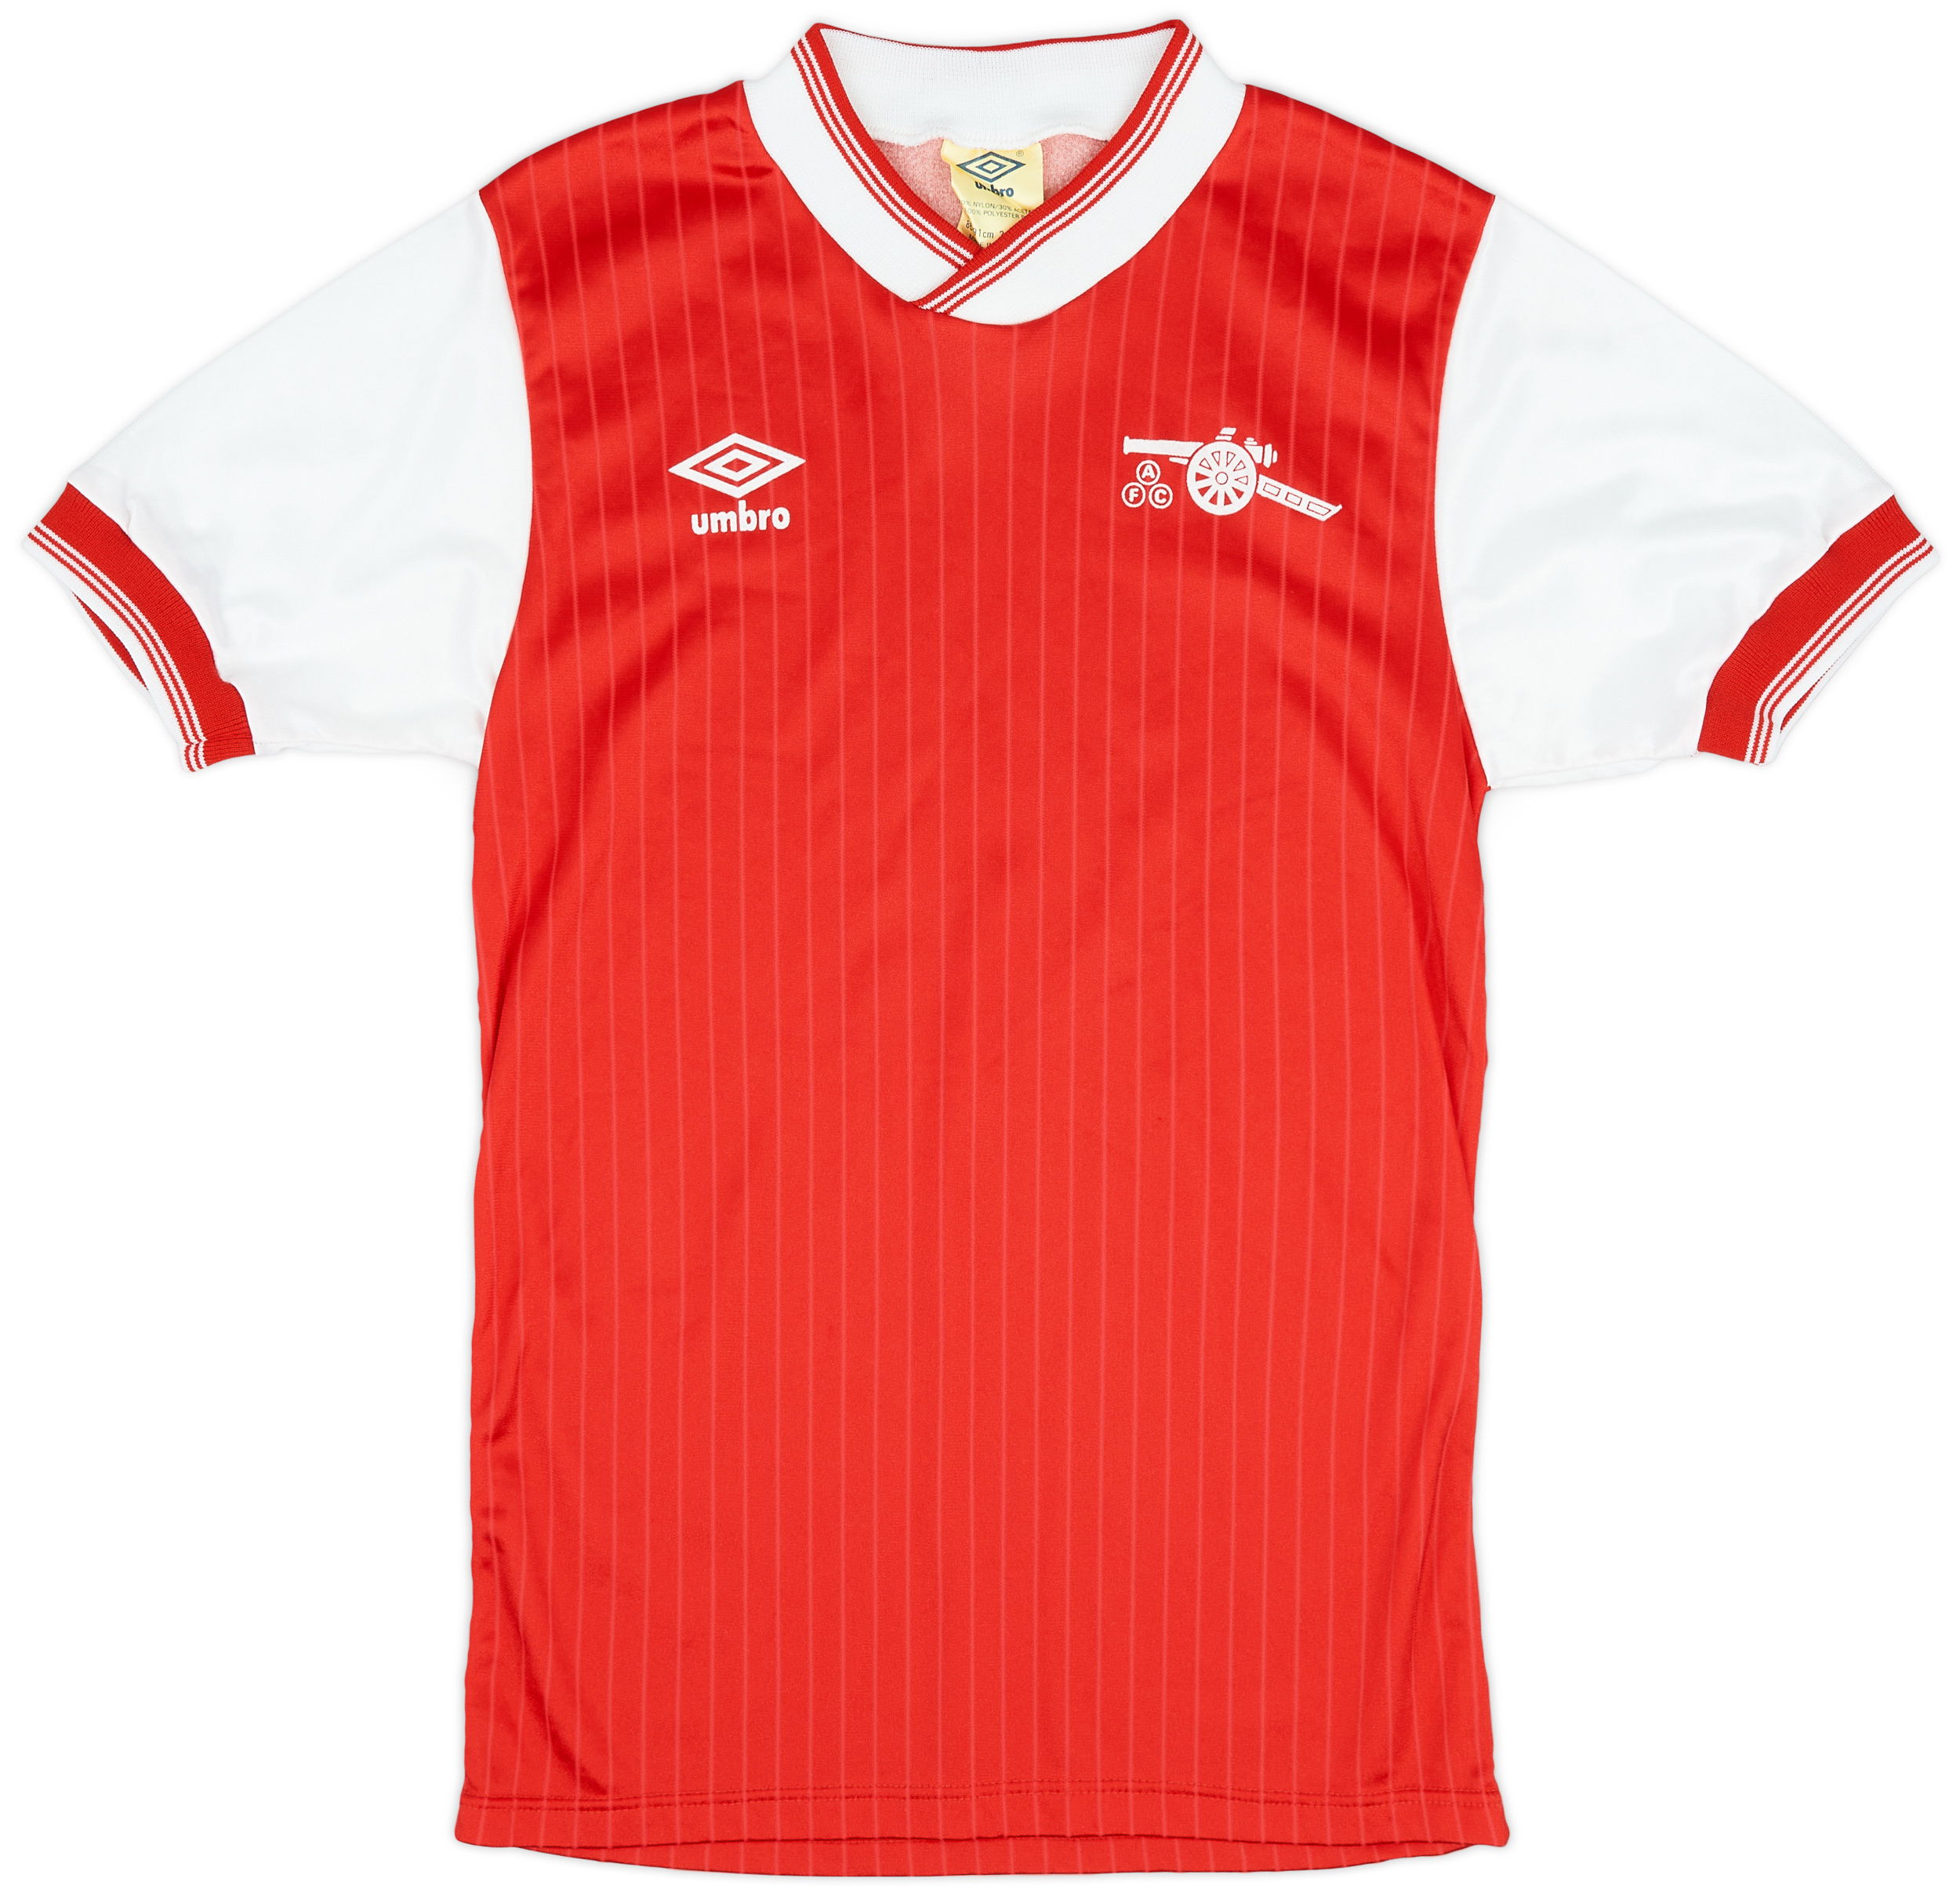 1984-85 Arsenal Home Shirt - 8/10 - ()